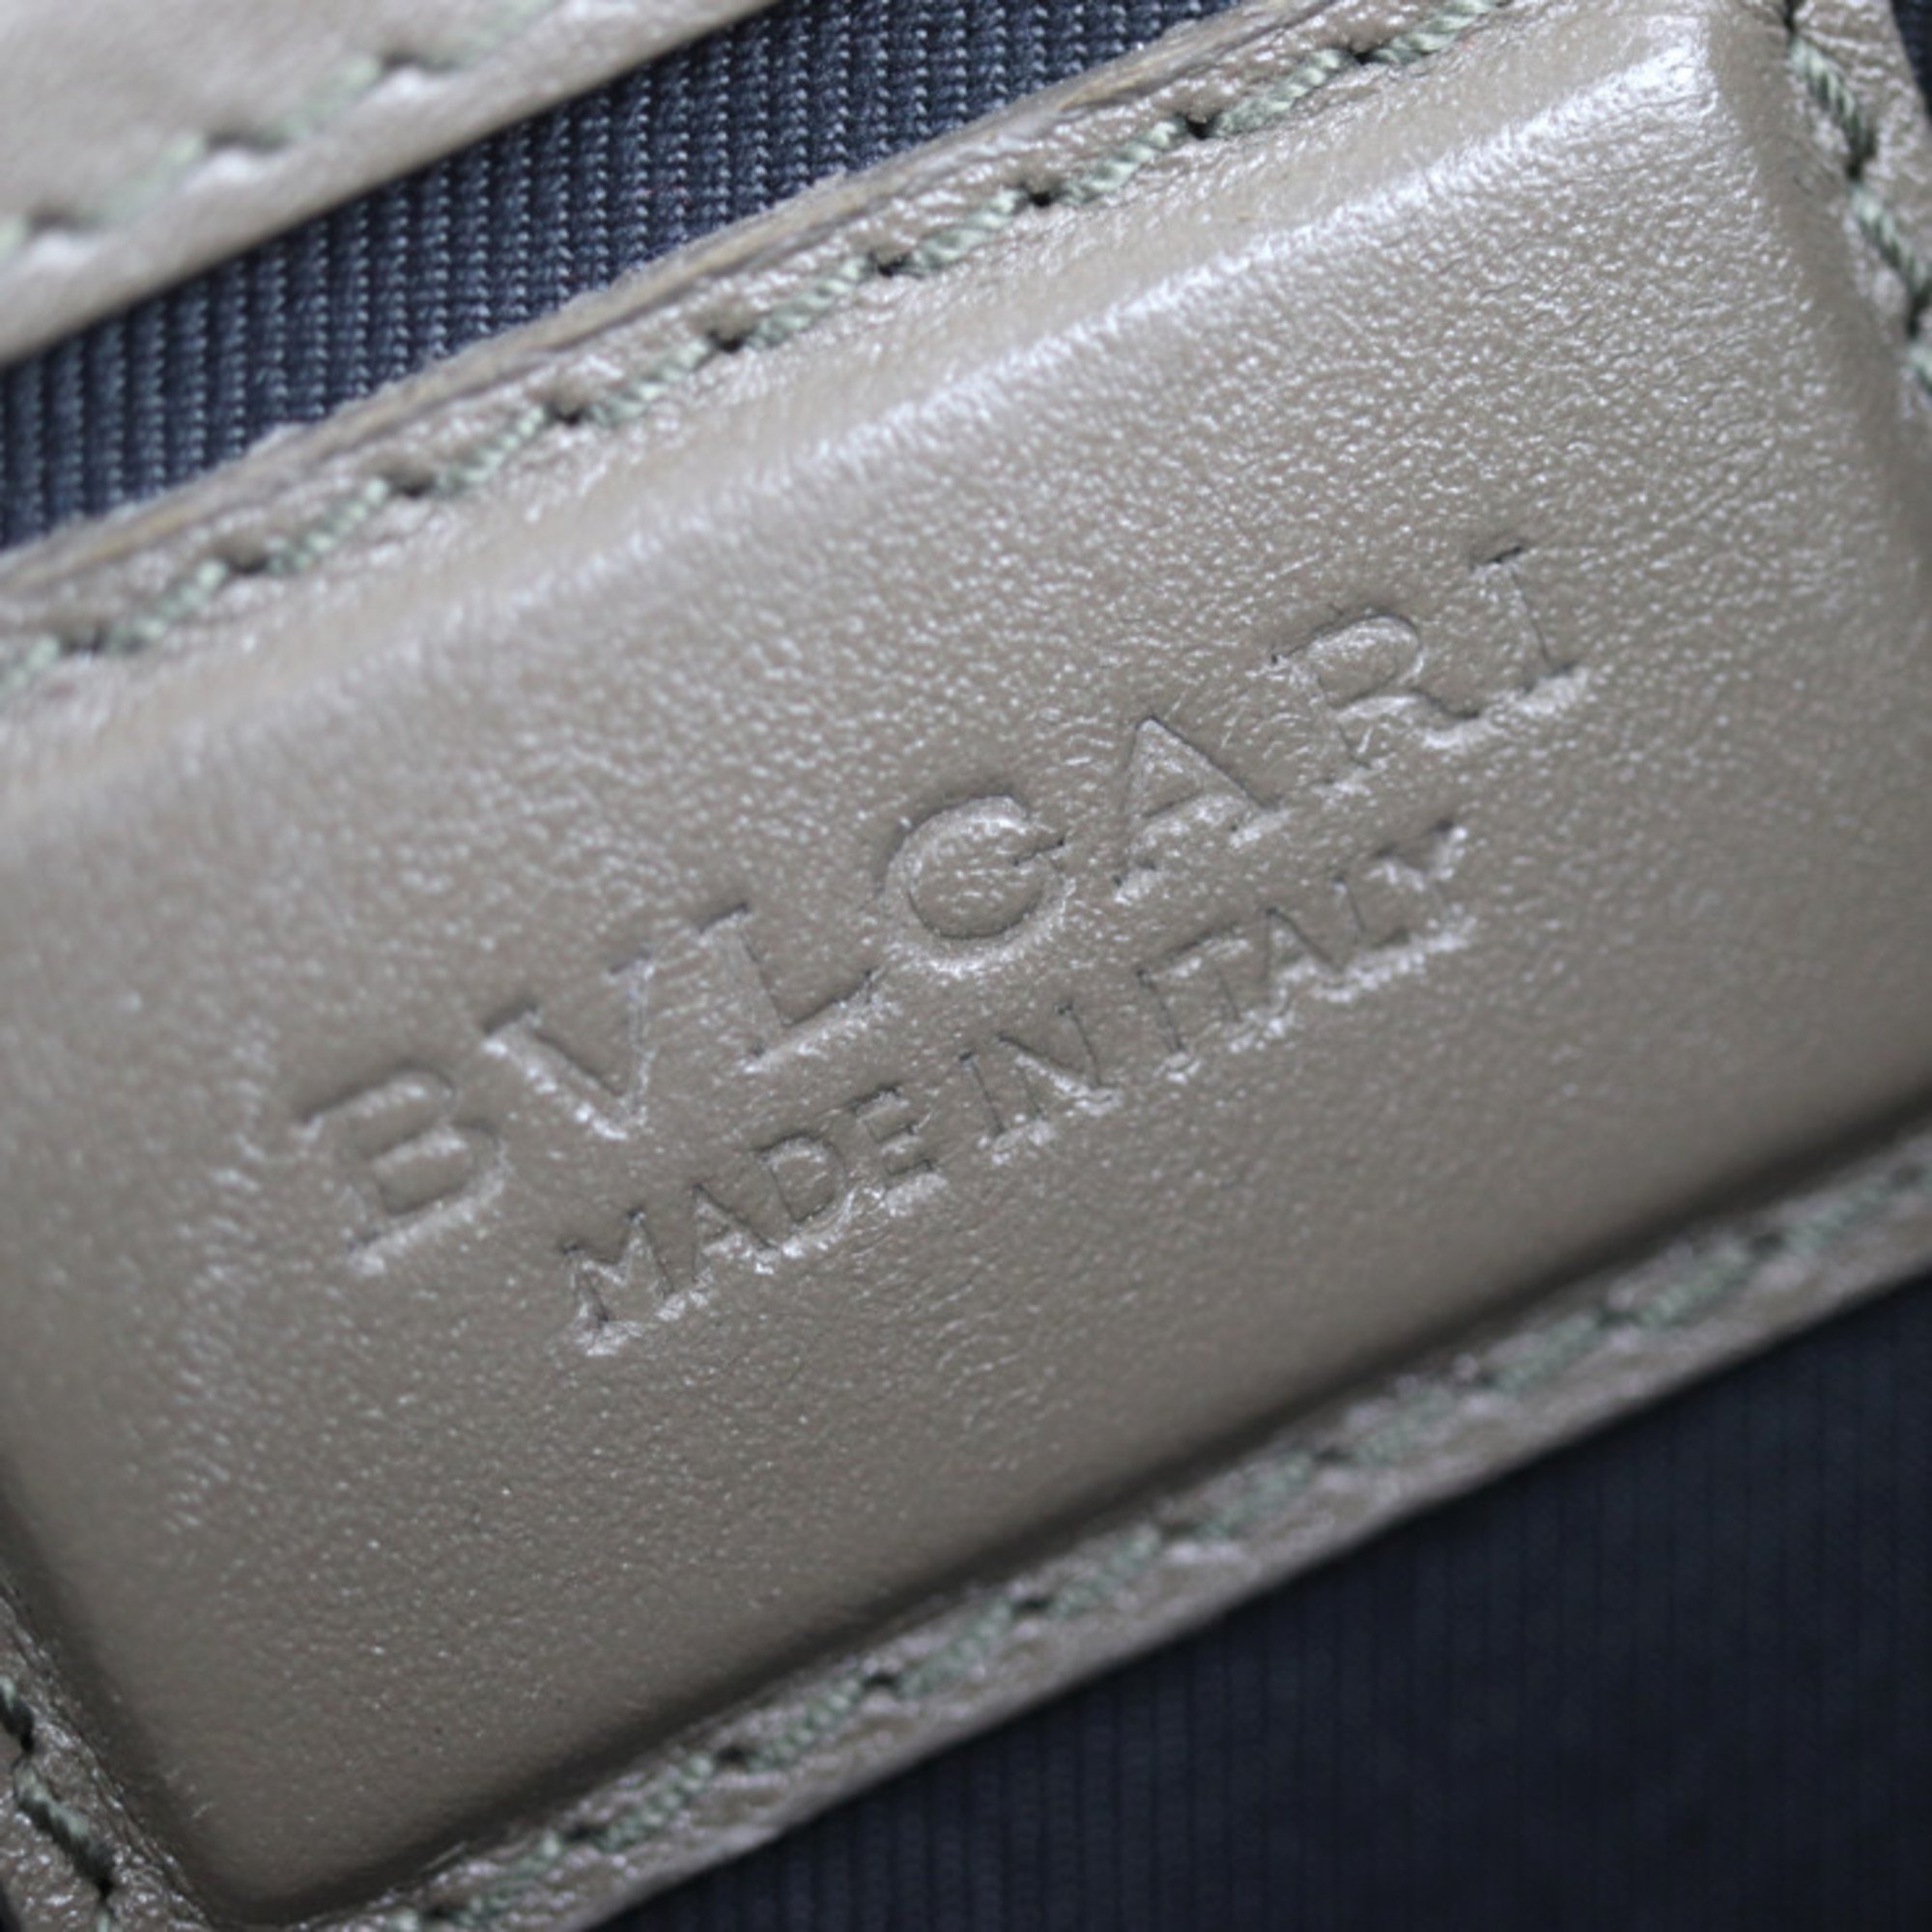 BVLGARI Bulgari shoulder bag 38639 leather blue gray 2way